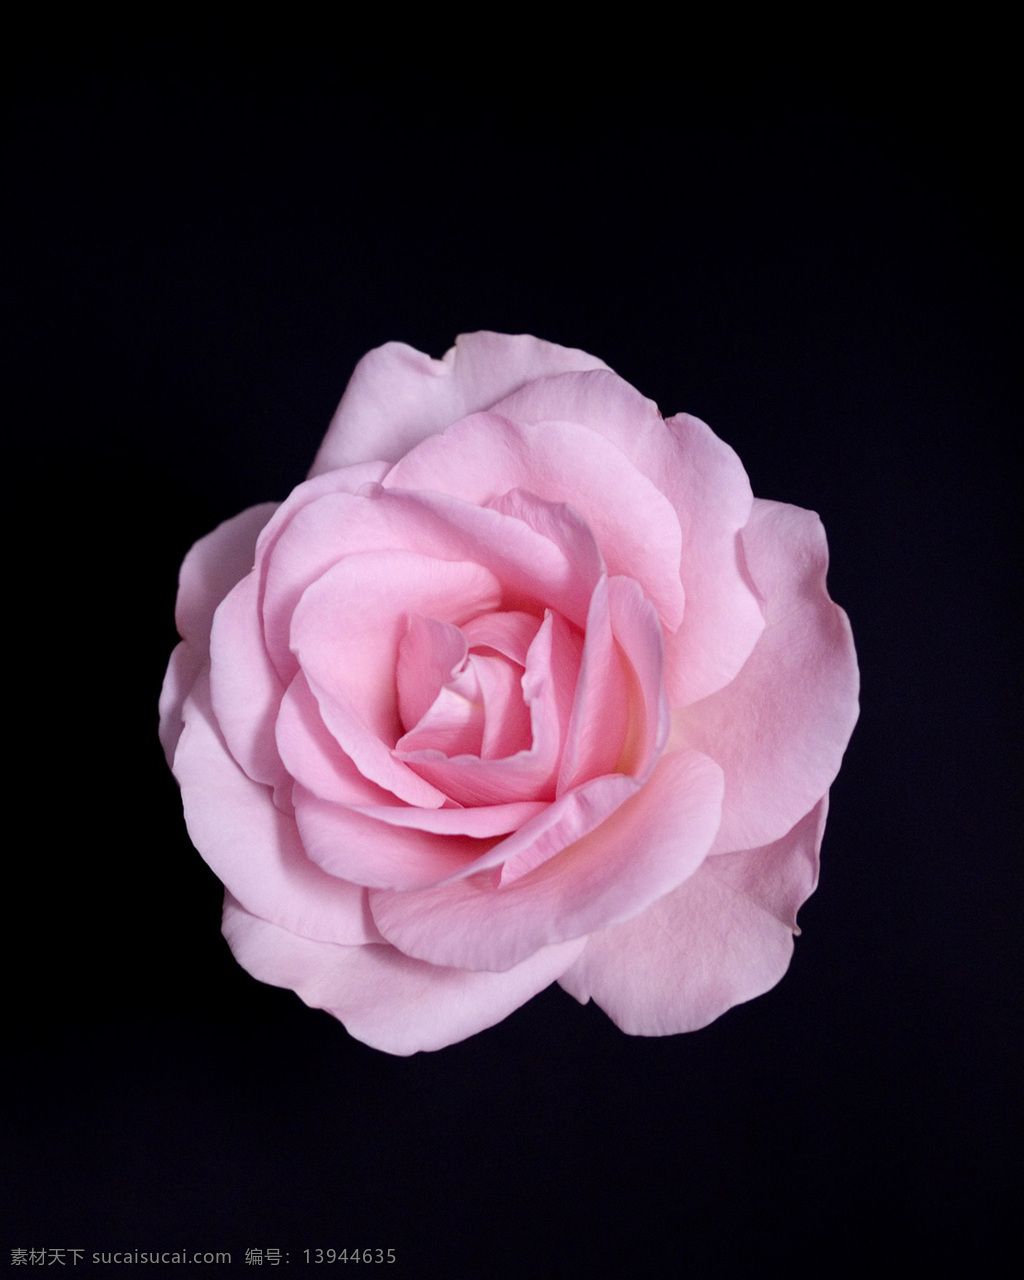 位图 写实花卉 植物摄影 花卉 花朵 免费素材 面料图库 服装图案 黑色